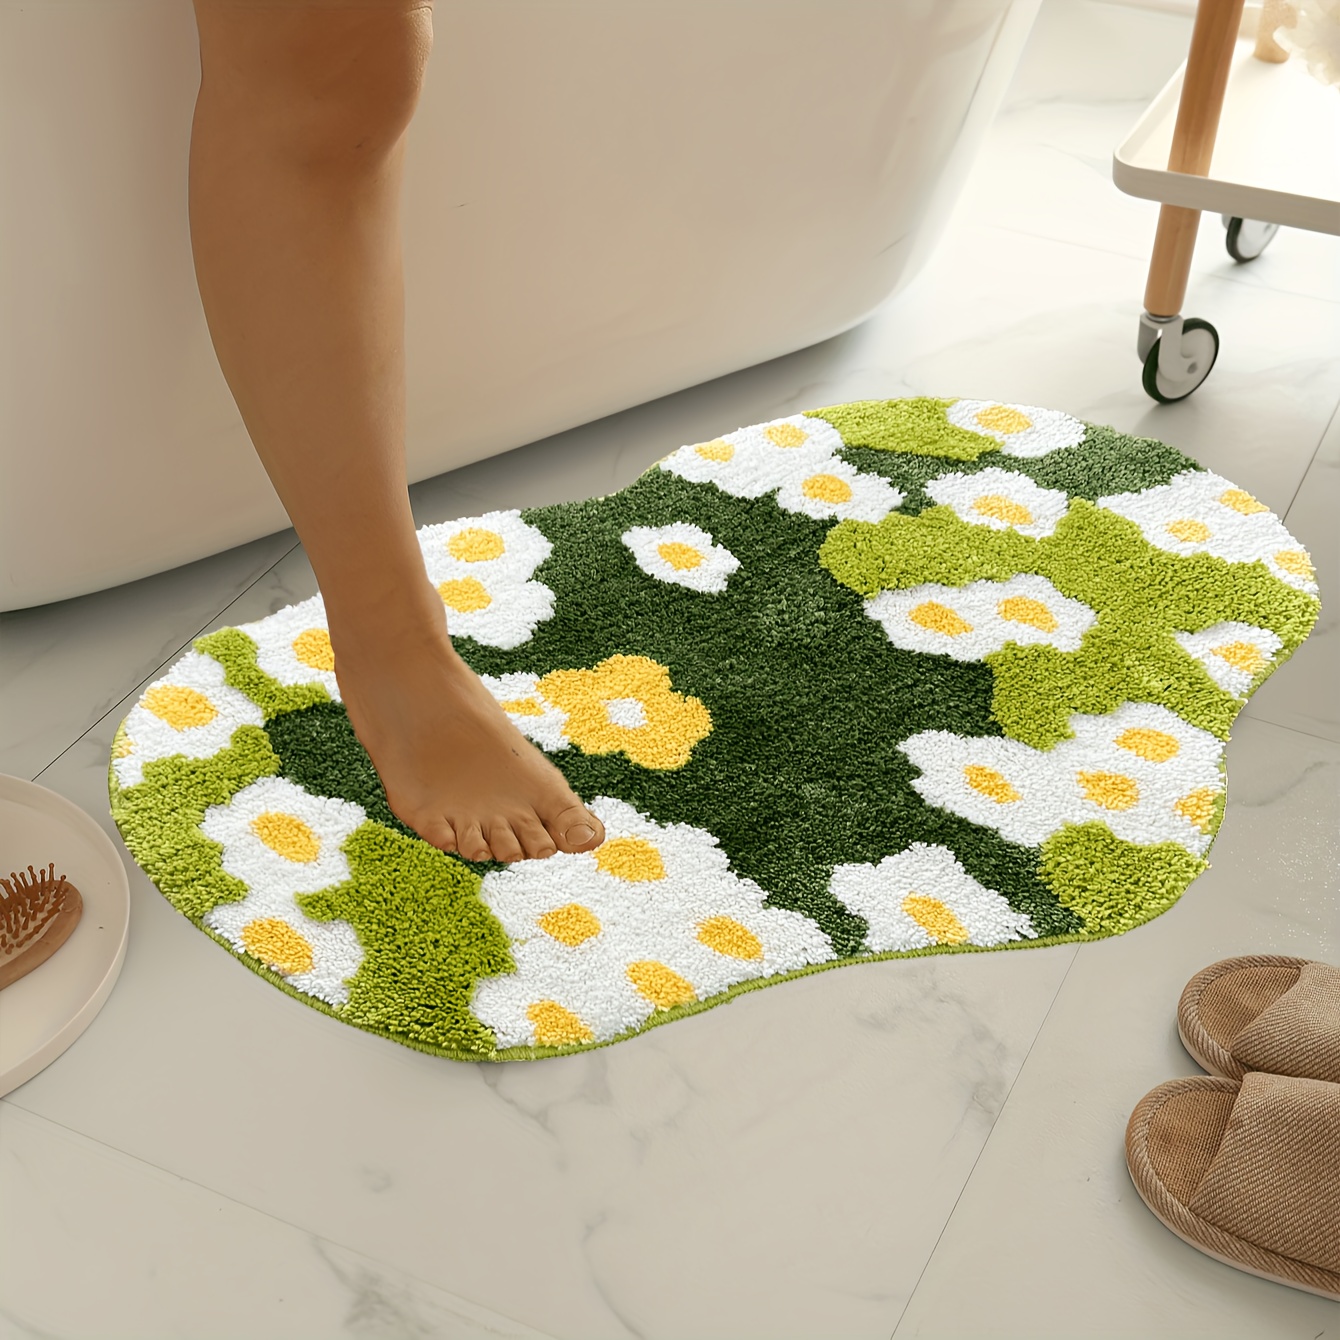 Crystal Velvet 3d Stereoscopic Green Moss Carpet Area Carpet - Temu